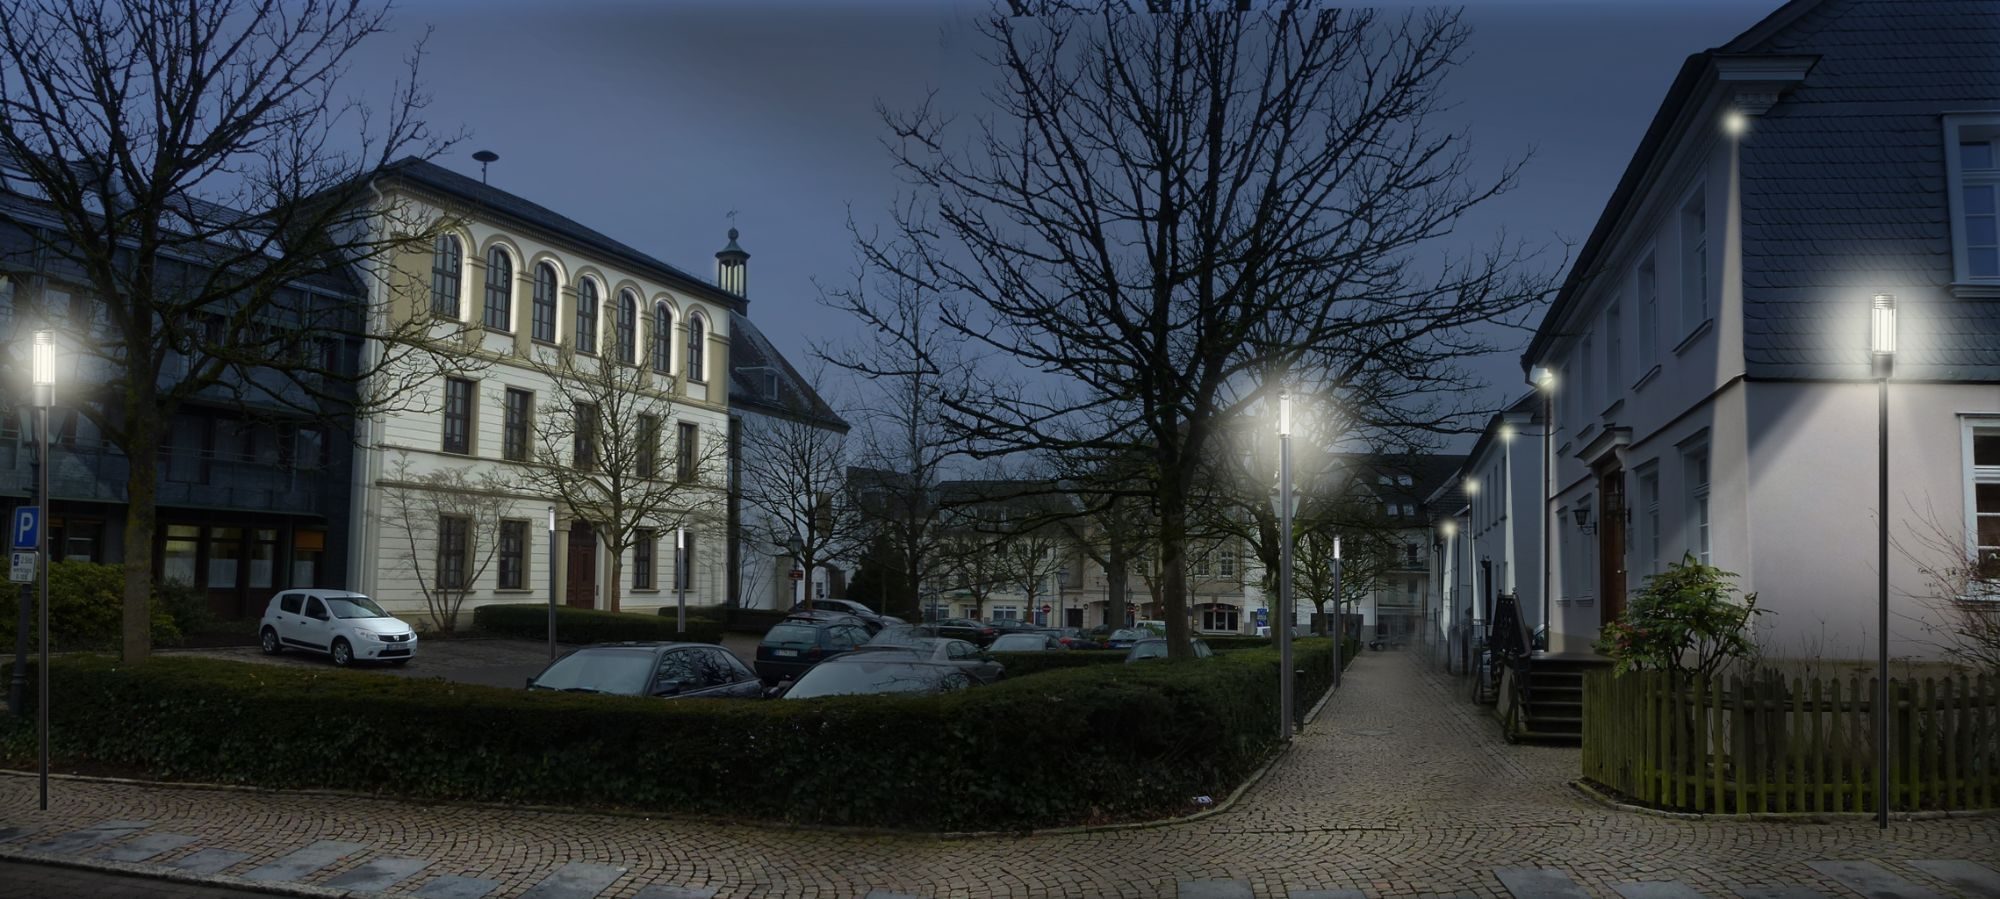 Am kommenden Samstagabend, 3. September 2016, findet in der Hansestadt Attendorn eine Probebeleuchtung an mehreren Gebäuden (hier: Klosterplatz) statt. © Büro Licht Raum Stadt Planung, Wuppertal 